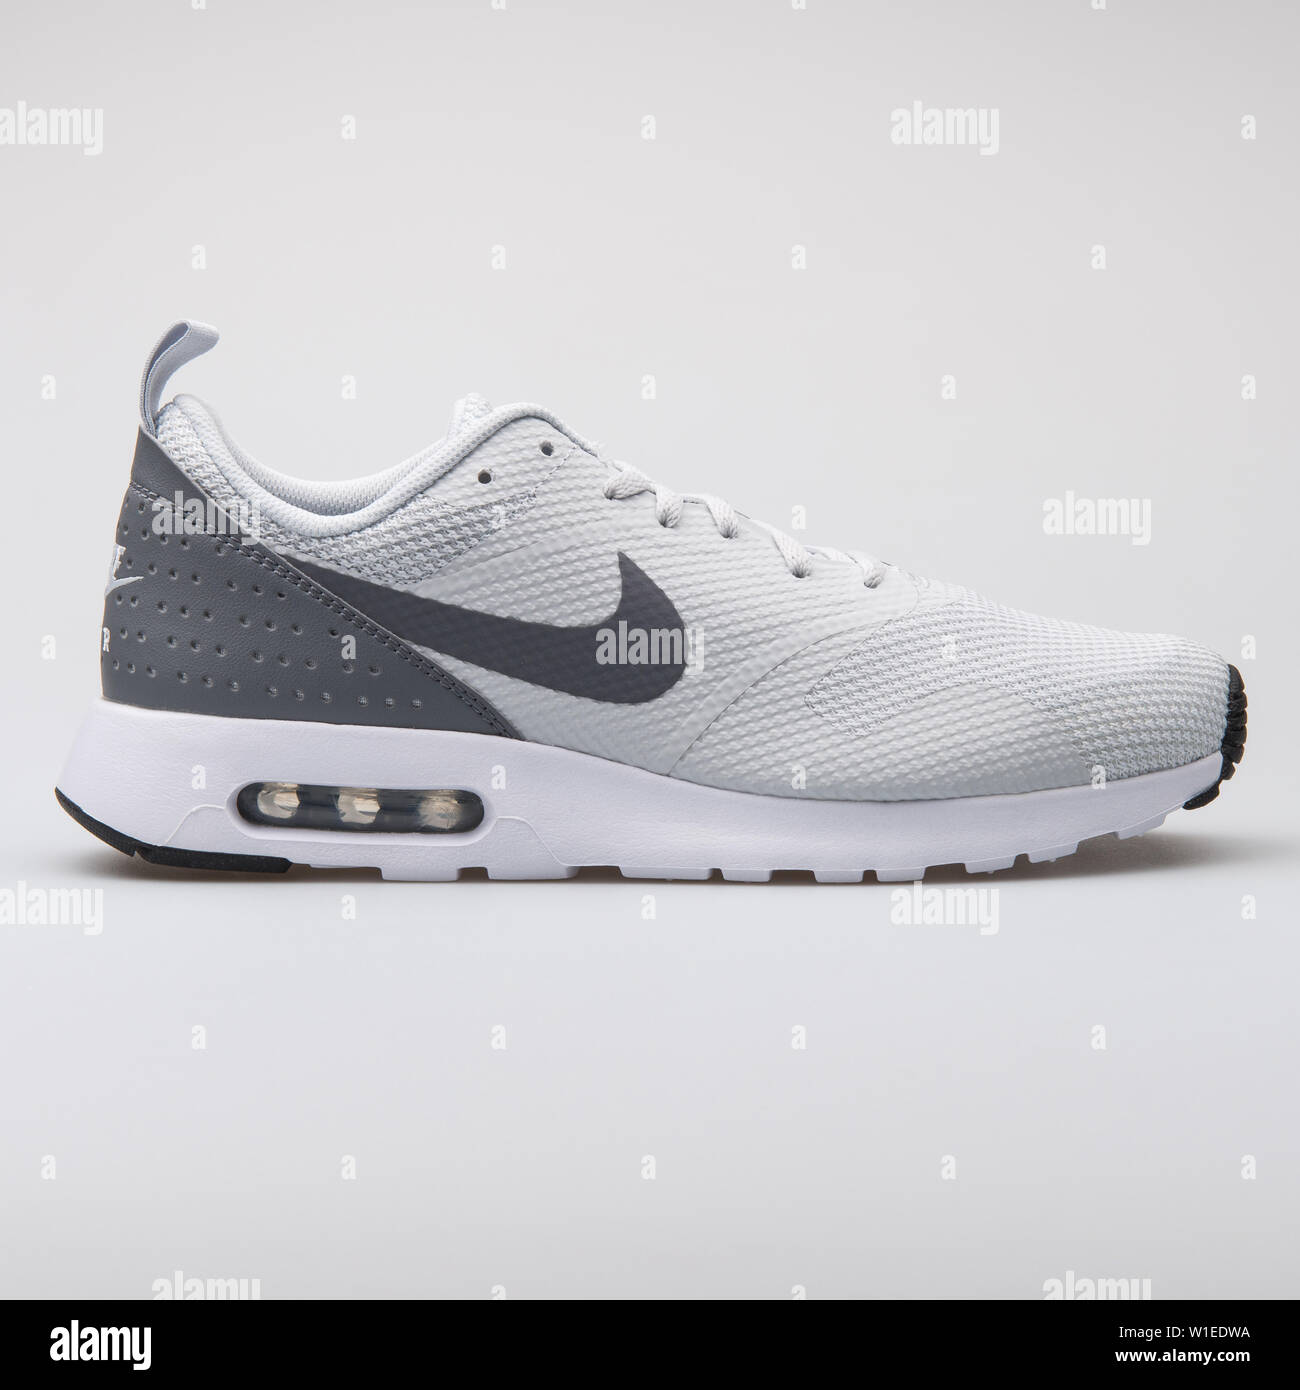 Viena, Austria - Nike Air Max Tavas zapatillas gris sobre fondo blanco Fotografía de stock Alamy